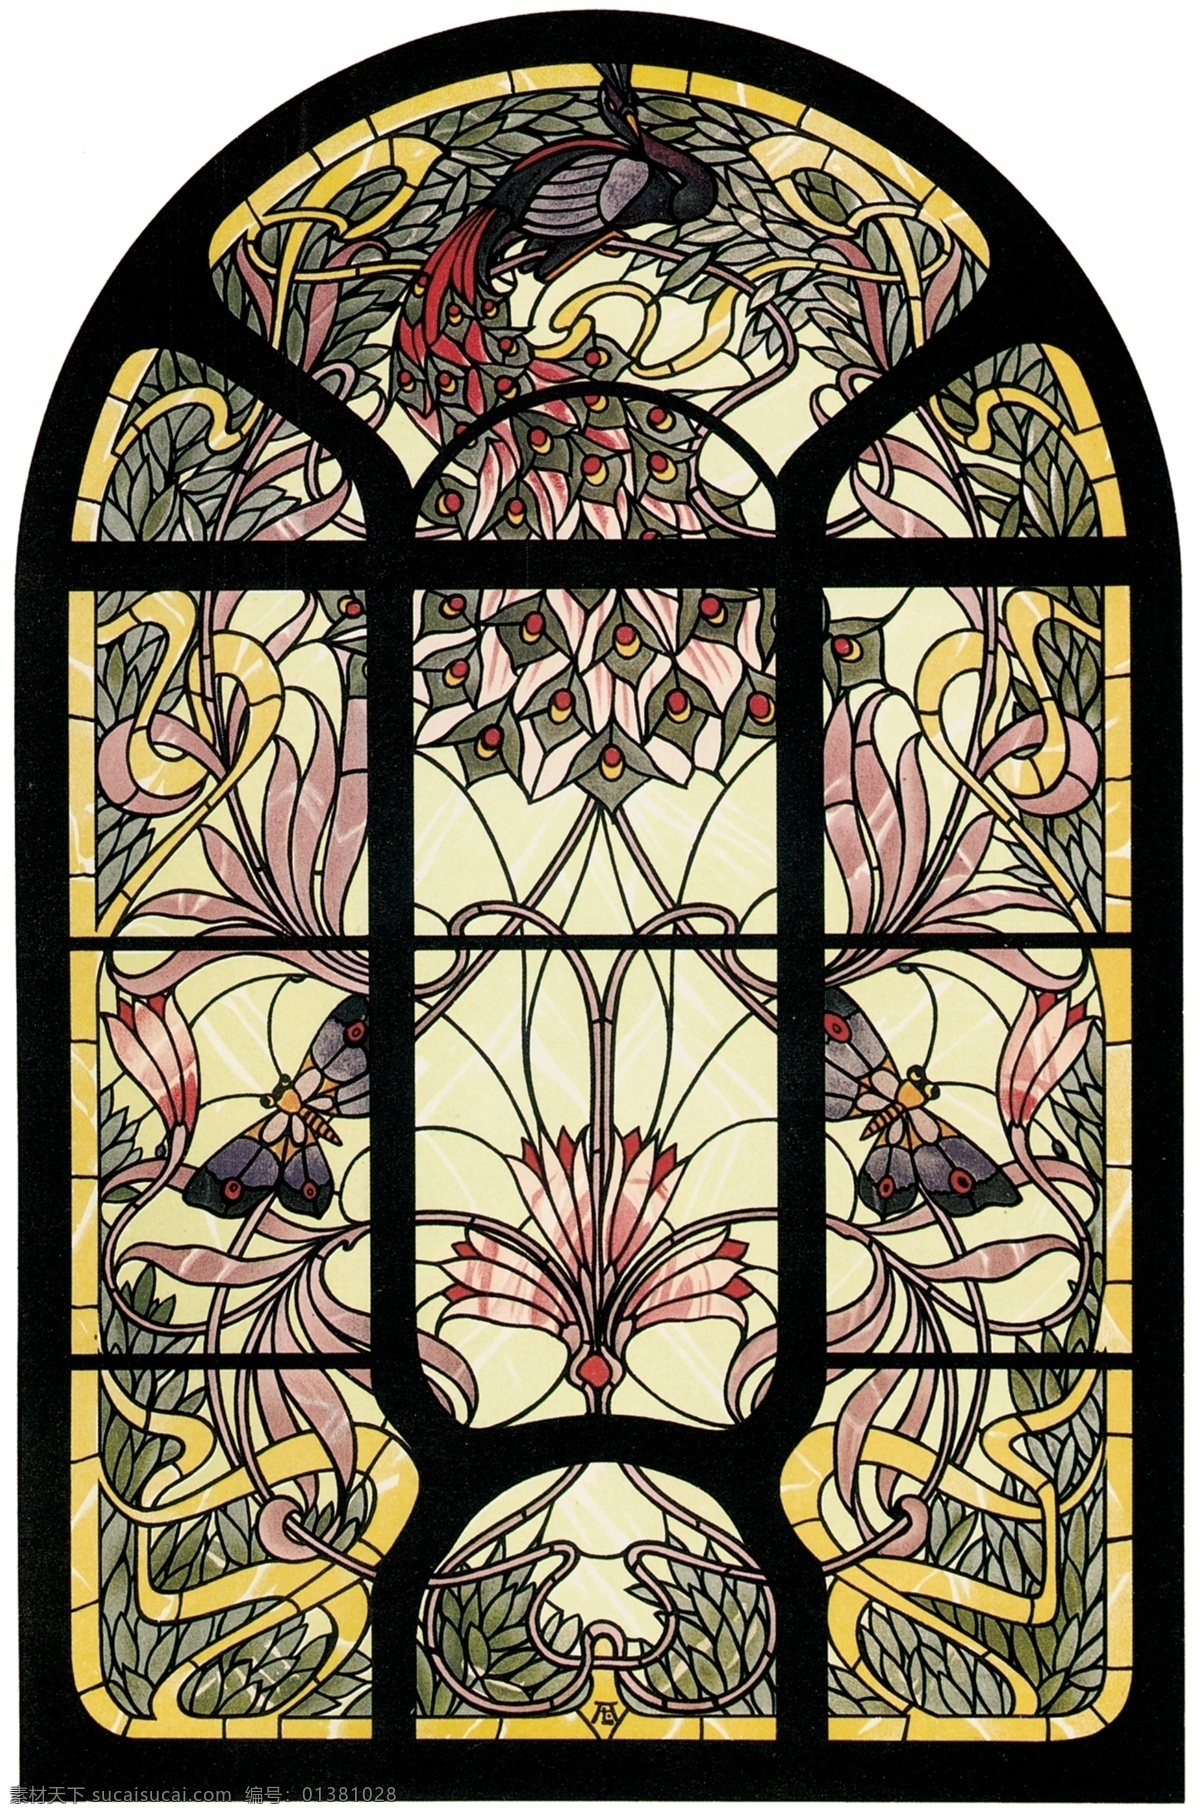 彩色 玻璃 图案 传统 古典 教堂 欧洲 设计素材 彩色玻璃图案 宗教 宗教信仰 文化艺术